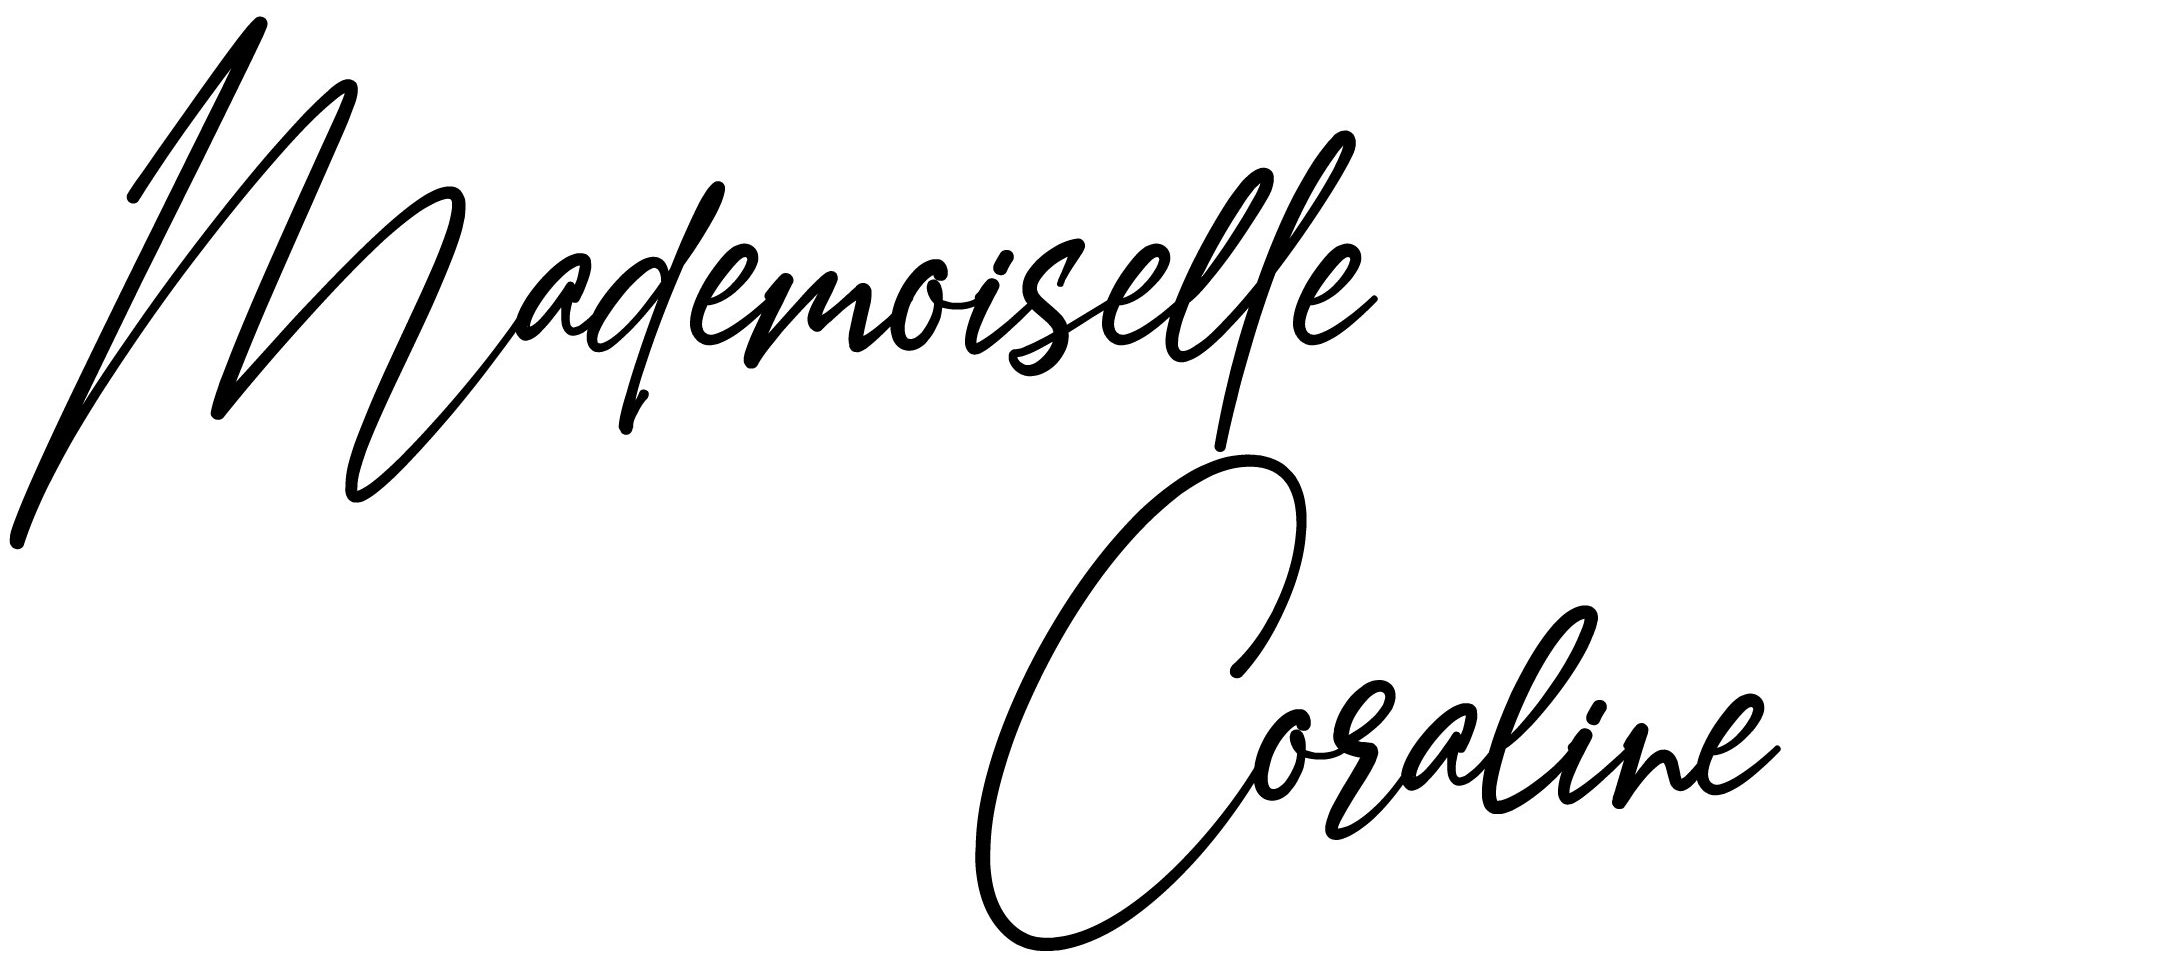 Mademoiselle Coraline